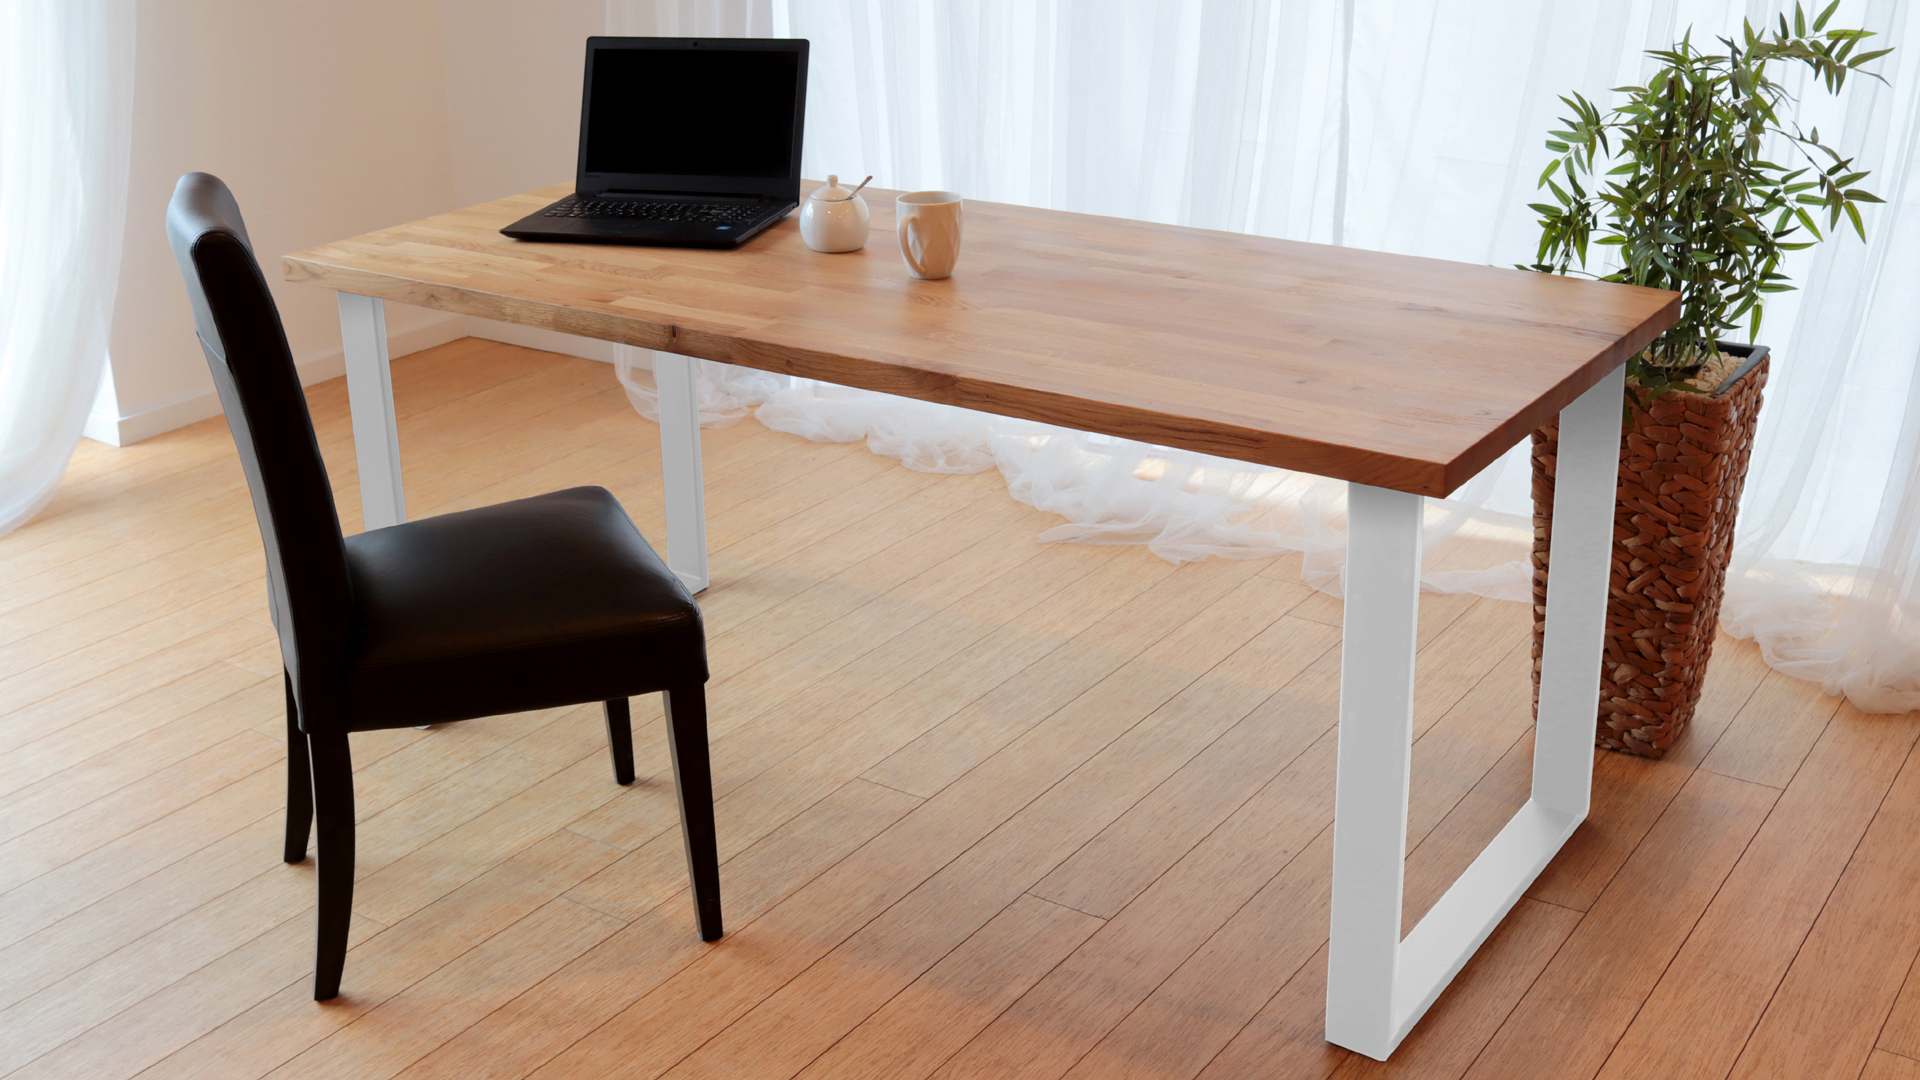 Stół z nogami metalowymi w kolorze białym